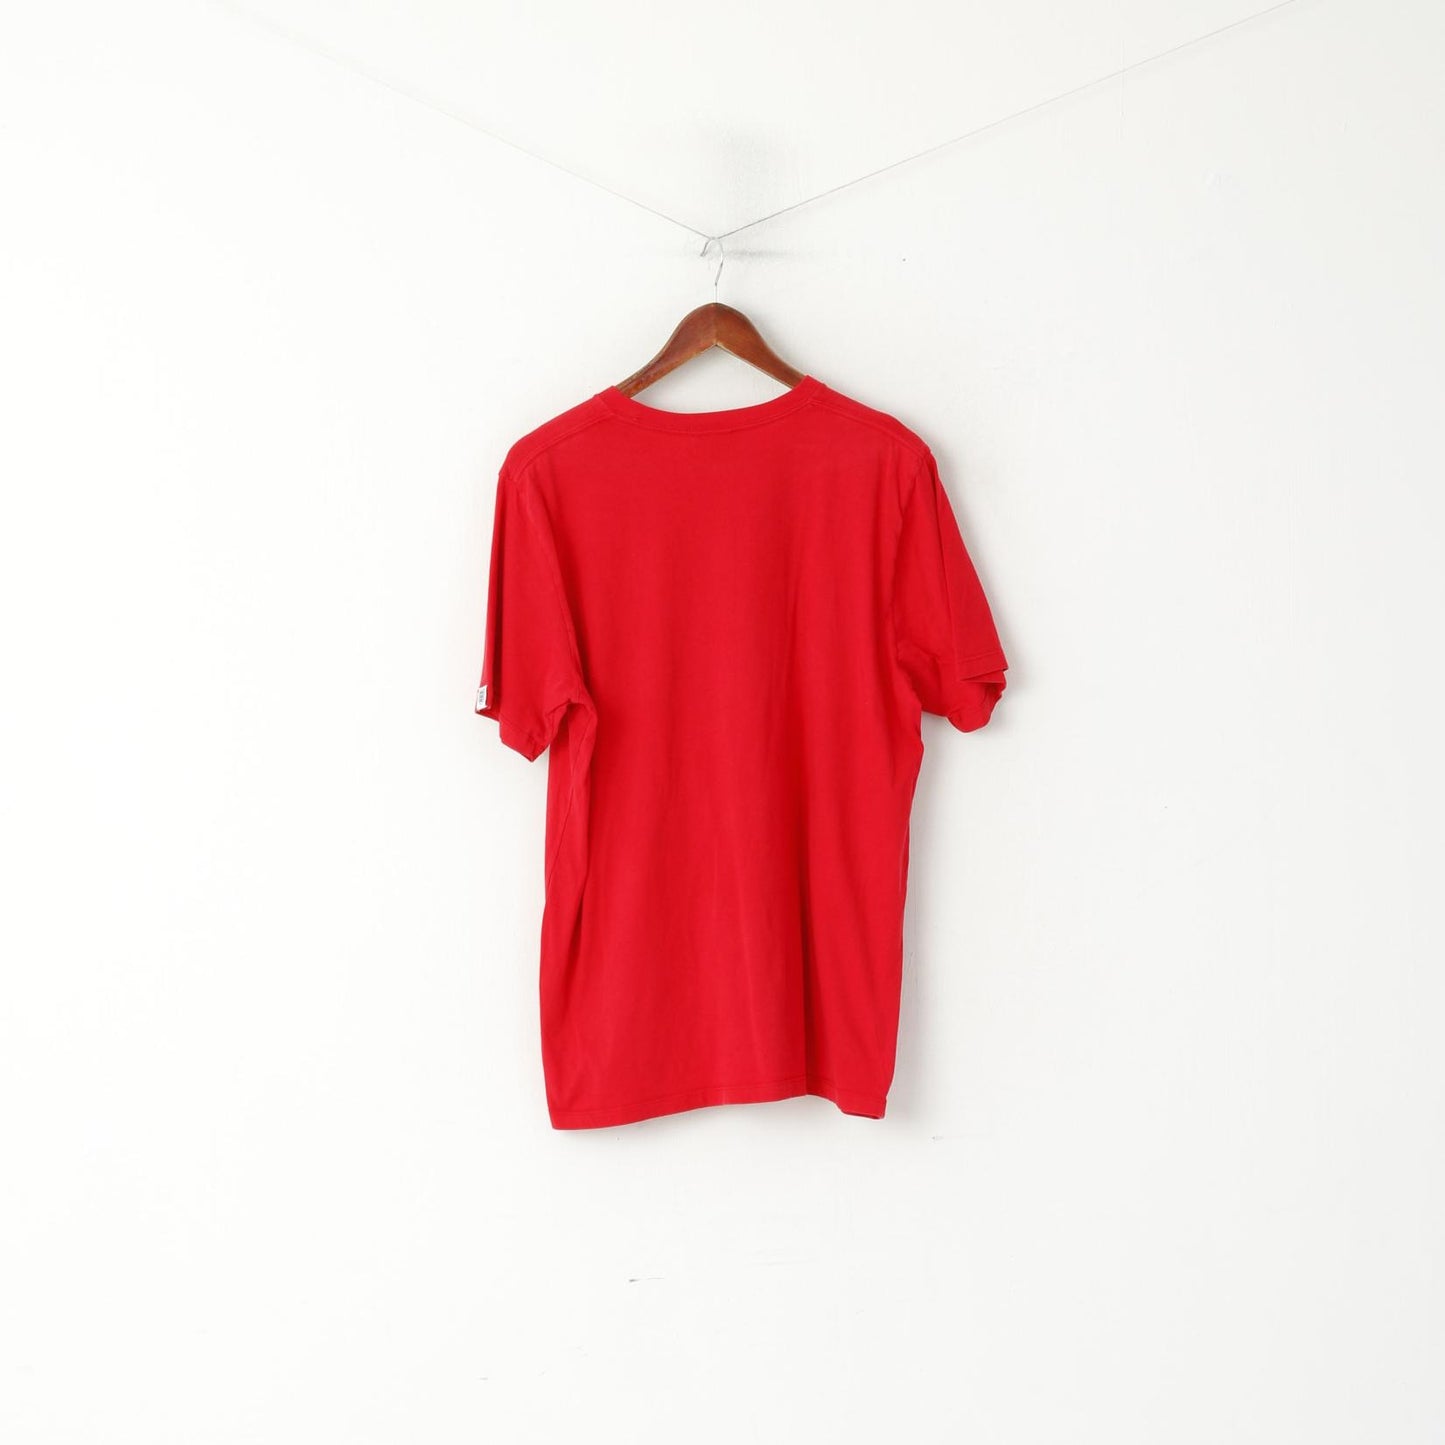 T-shirt Umbro da uomo XL in cotone rosso, top sportivo da calcio della nazionale inglese